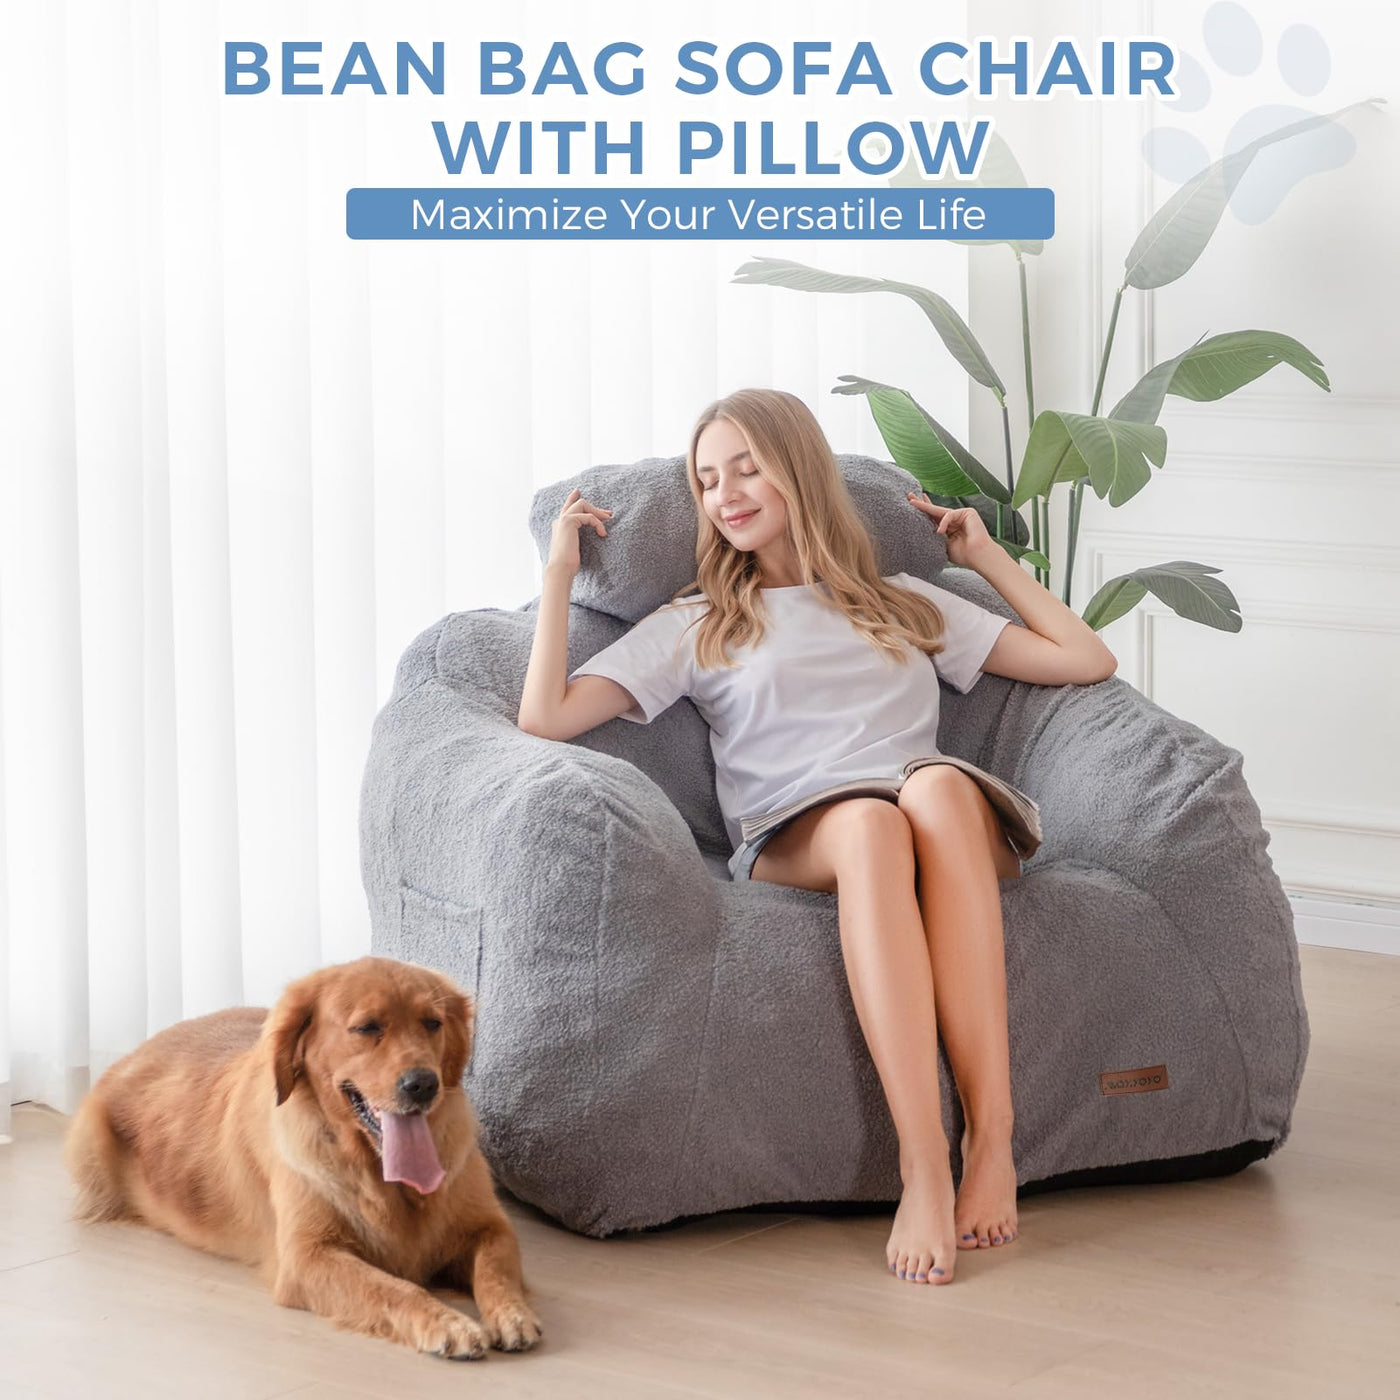 Giant Bean Bag Sofa Bean Bag Sofa, Giant Bean Bag Sofa Chair